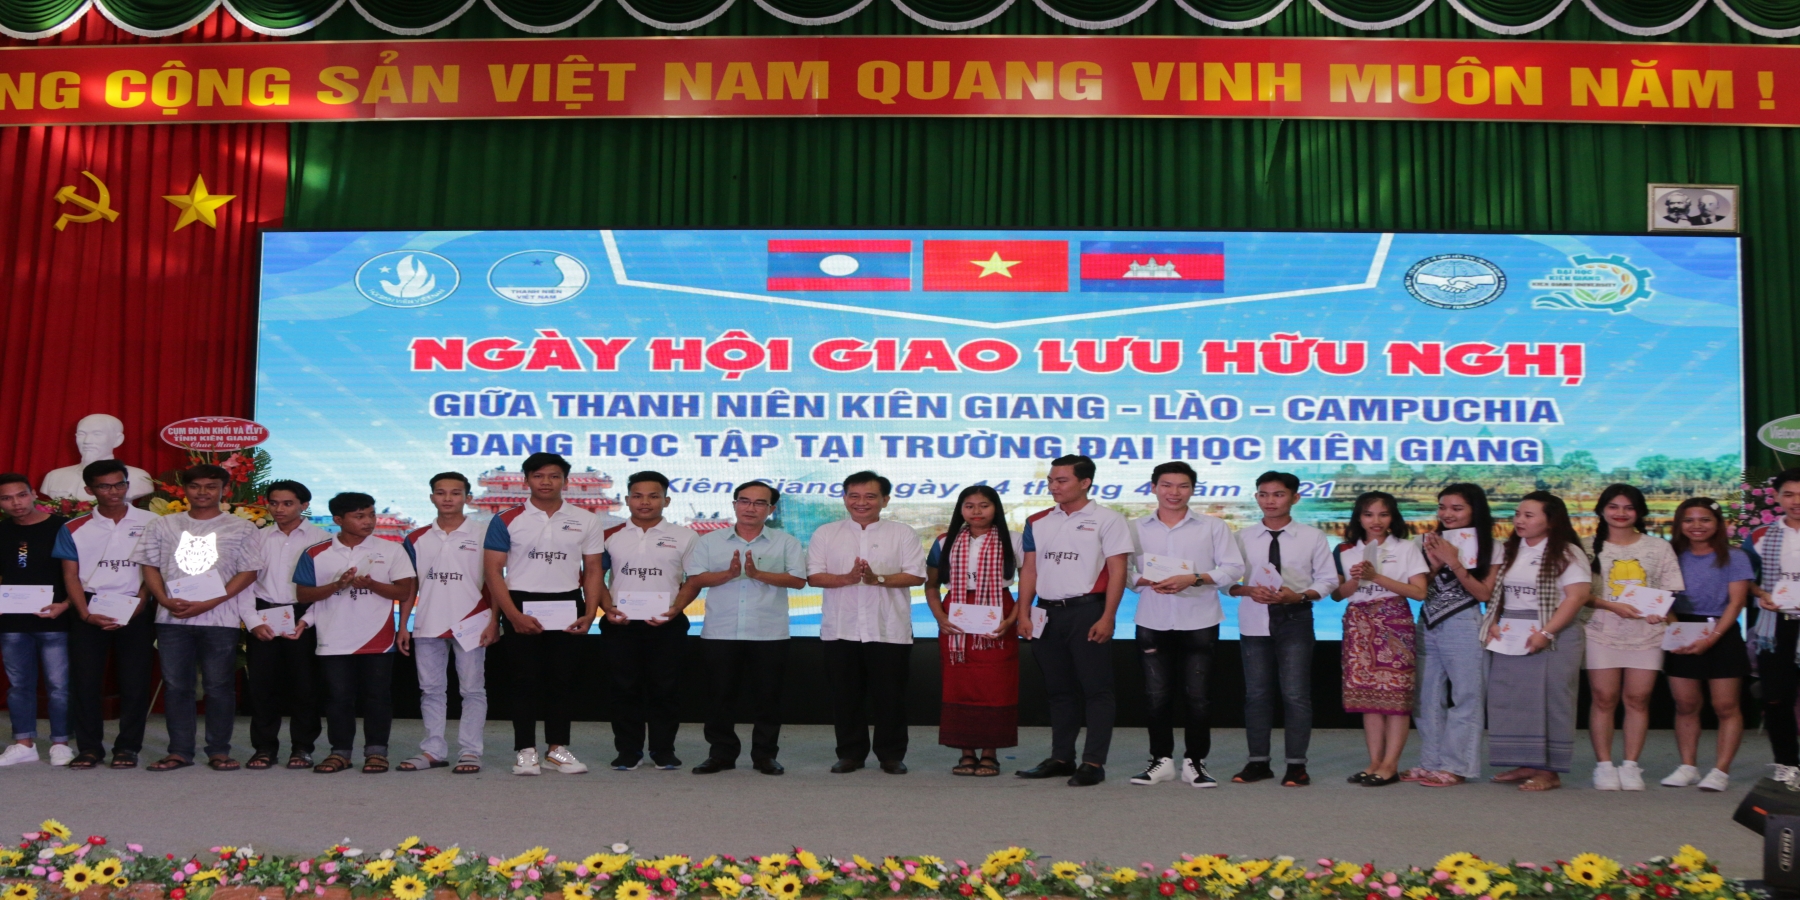 Tổ chức Ngày hội giao lưu hữu nghị giữa thanh niên Kiên Giang – Lào – Campuchia 